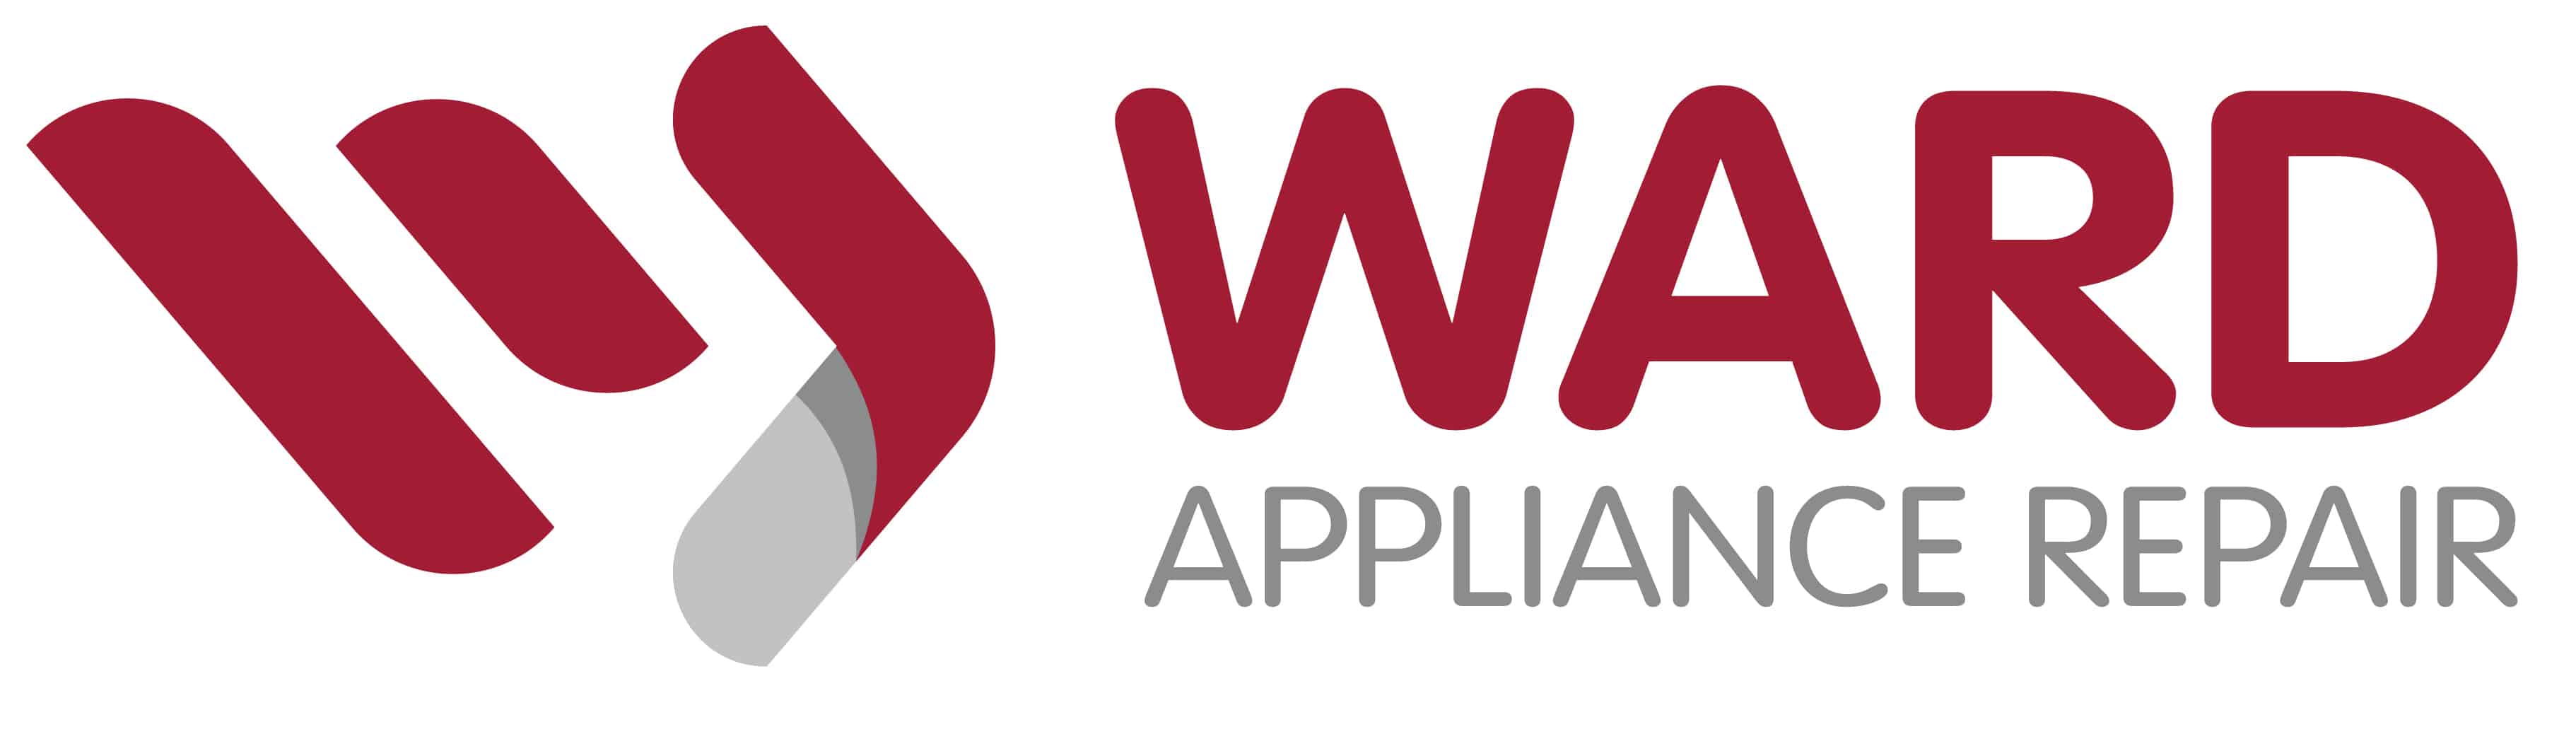 ward appliance repair logo